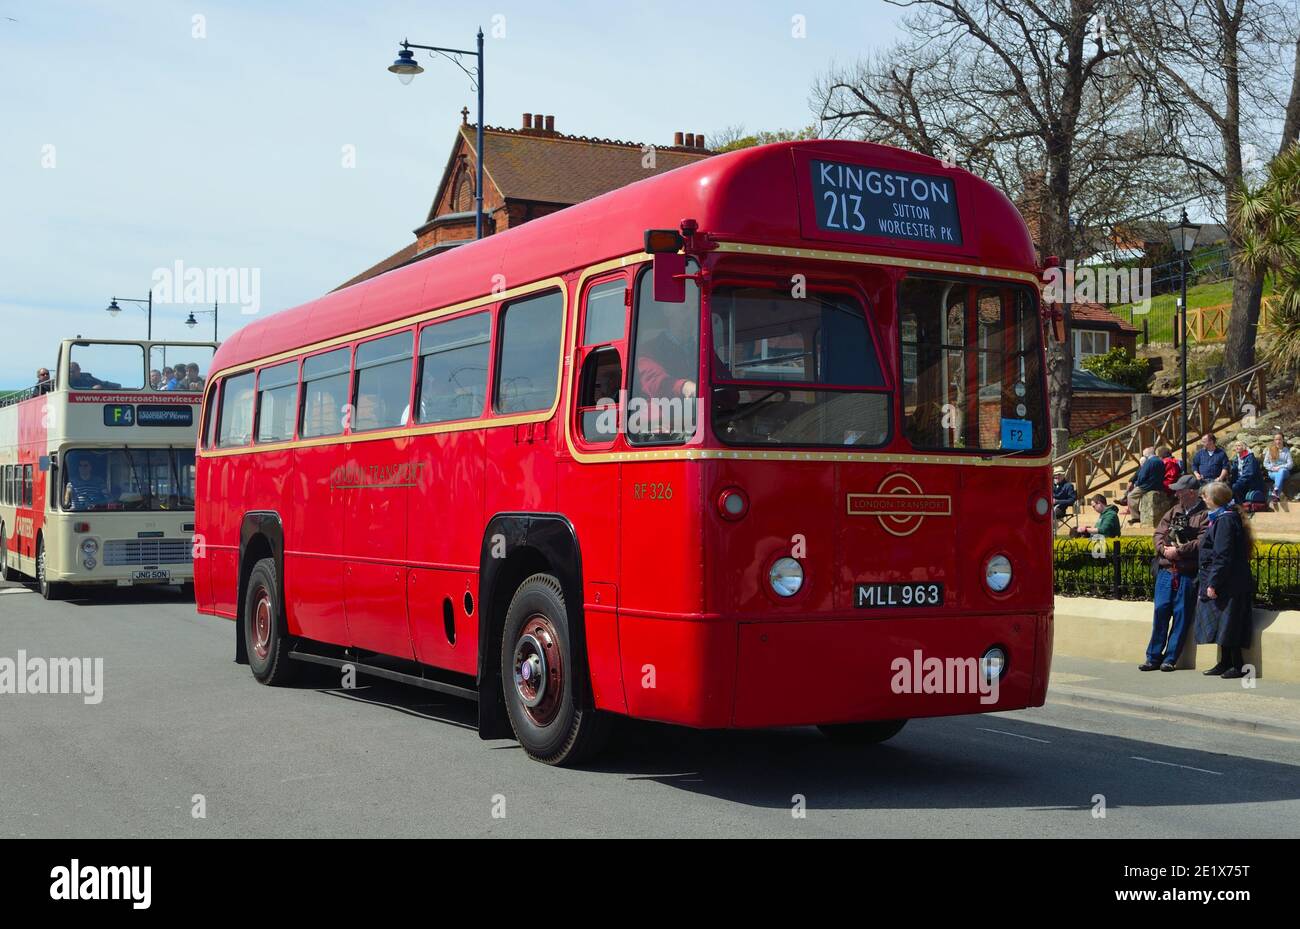 El autobús de transporte clásico Red London está en la carretera. Foto de stock